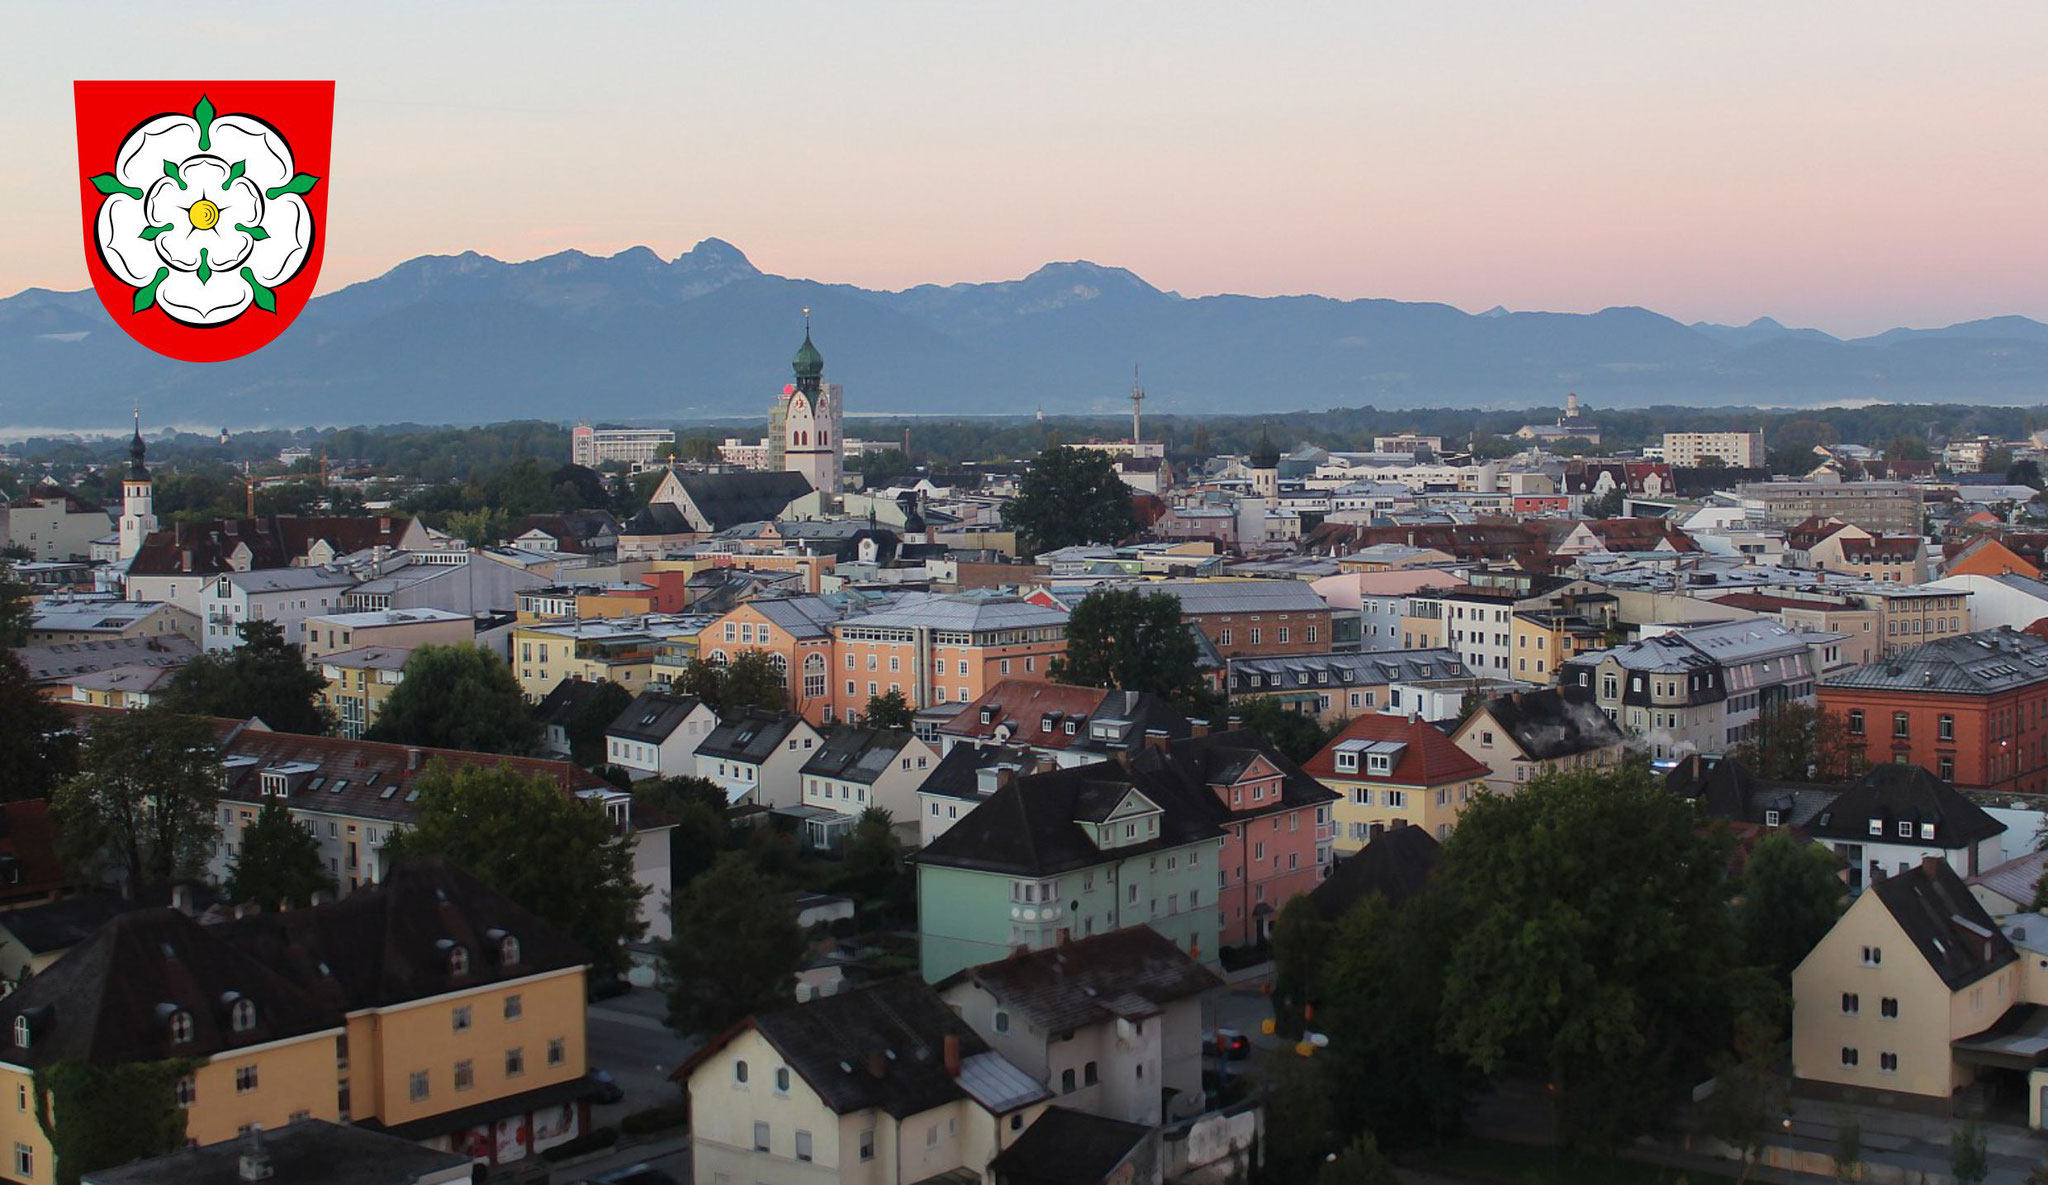 Ein Blick in die bayerischen Alpen über die schöne Stadt Rosenheim